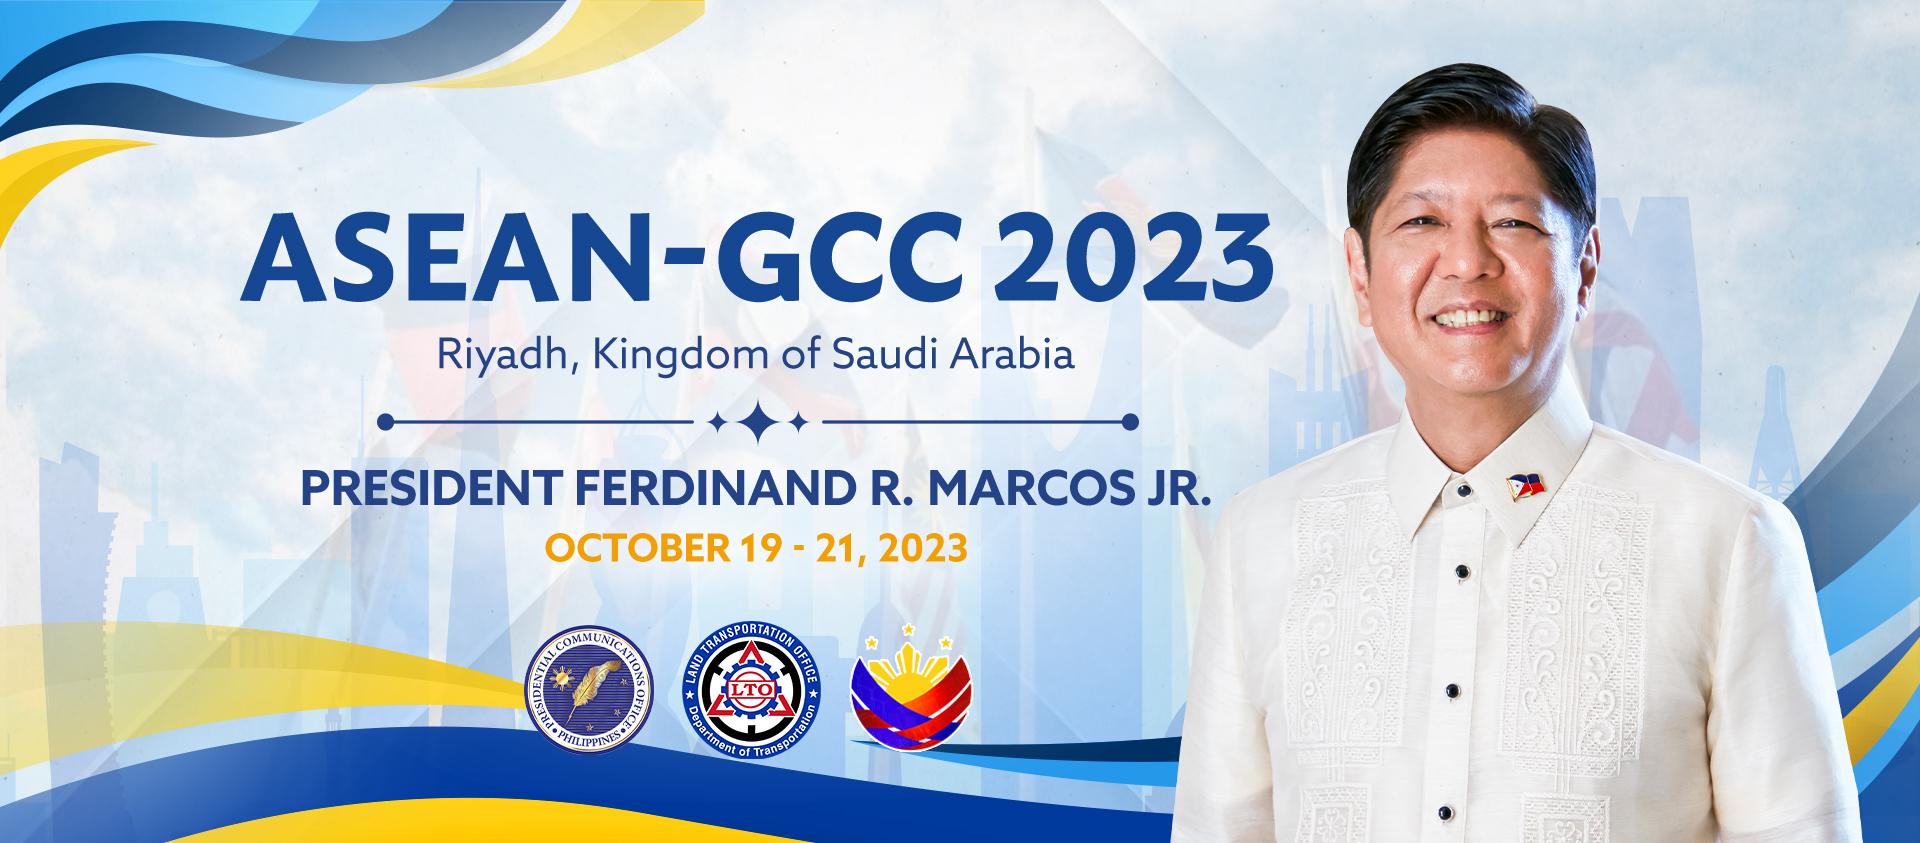 LTO_[FB COVER] Participation of President Ferdinand R. Marcos Jr. in the ASEAN-GCC (Riyadh, Kingdom of Saudi Arabia) copy